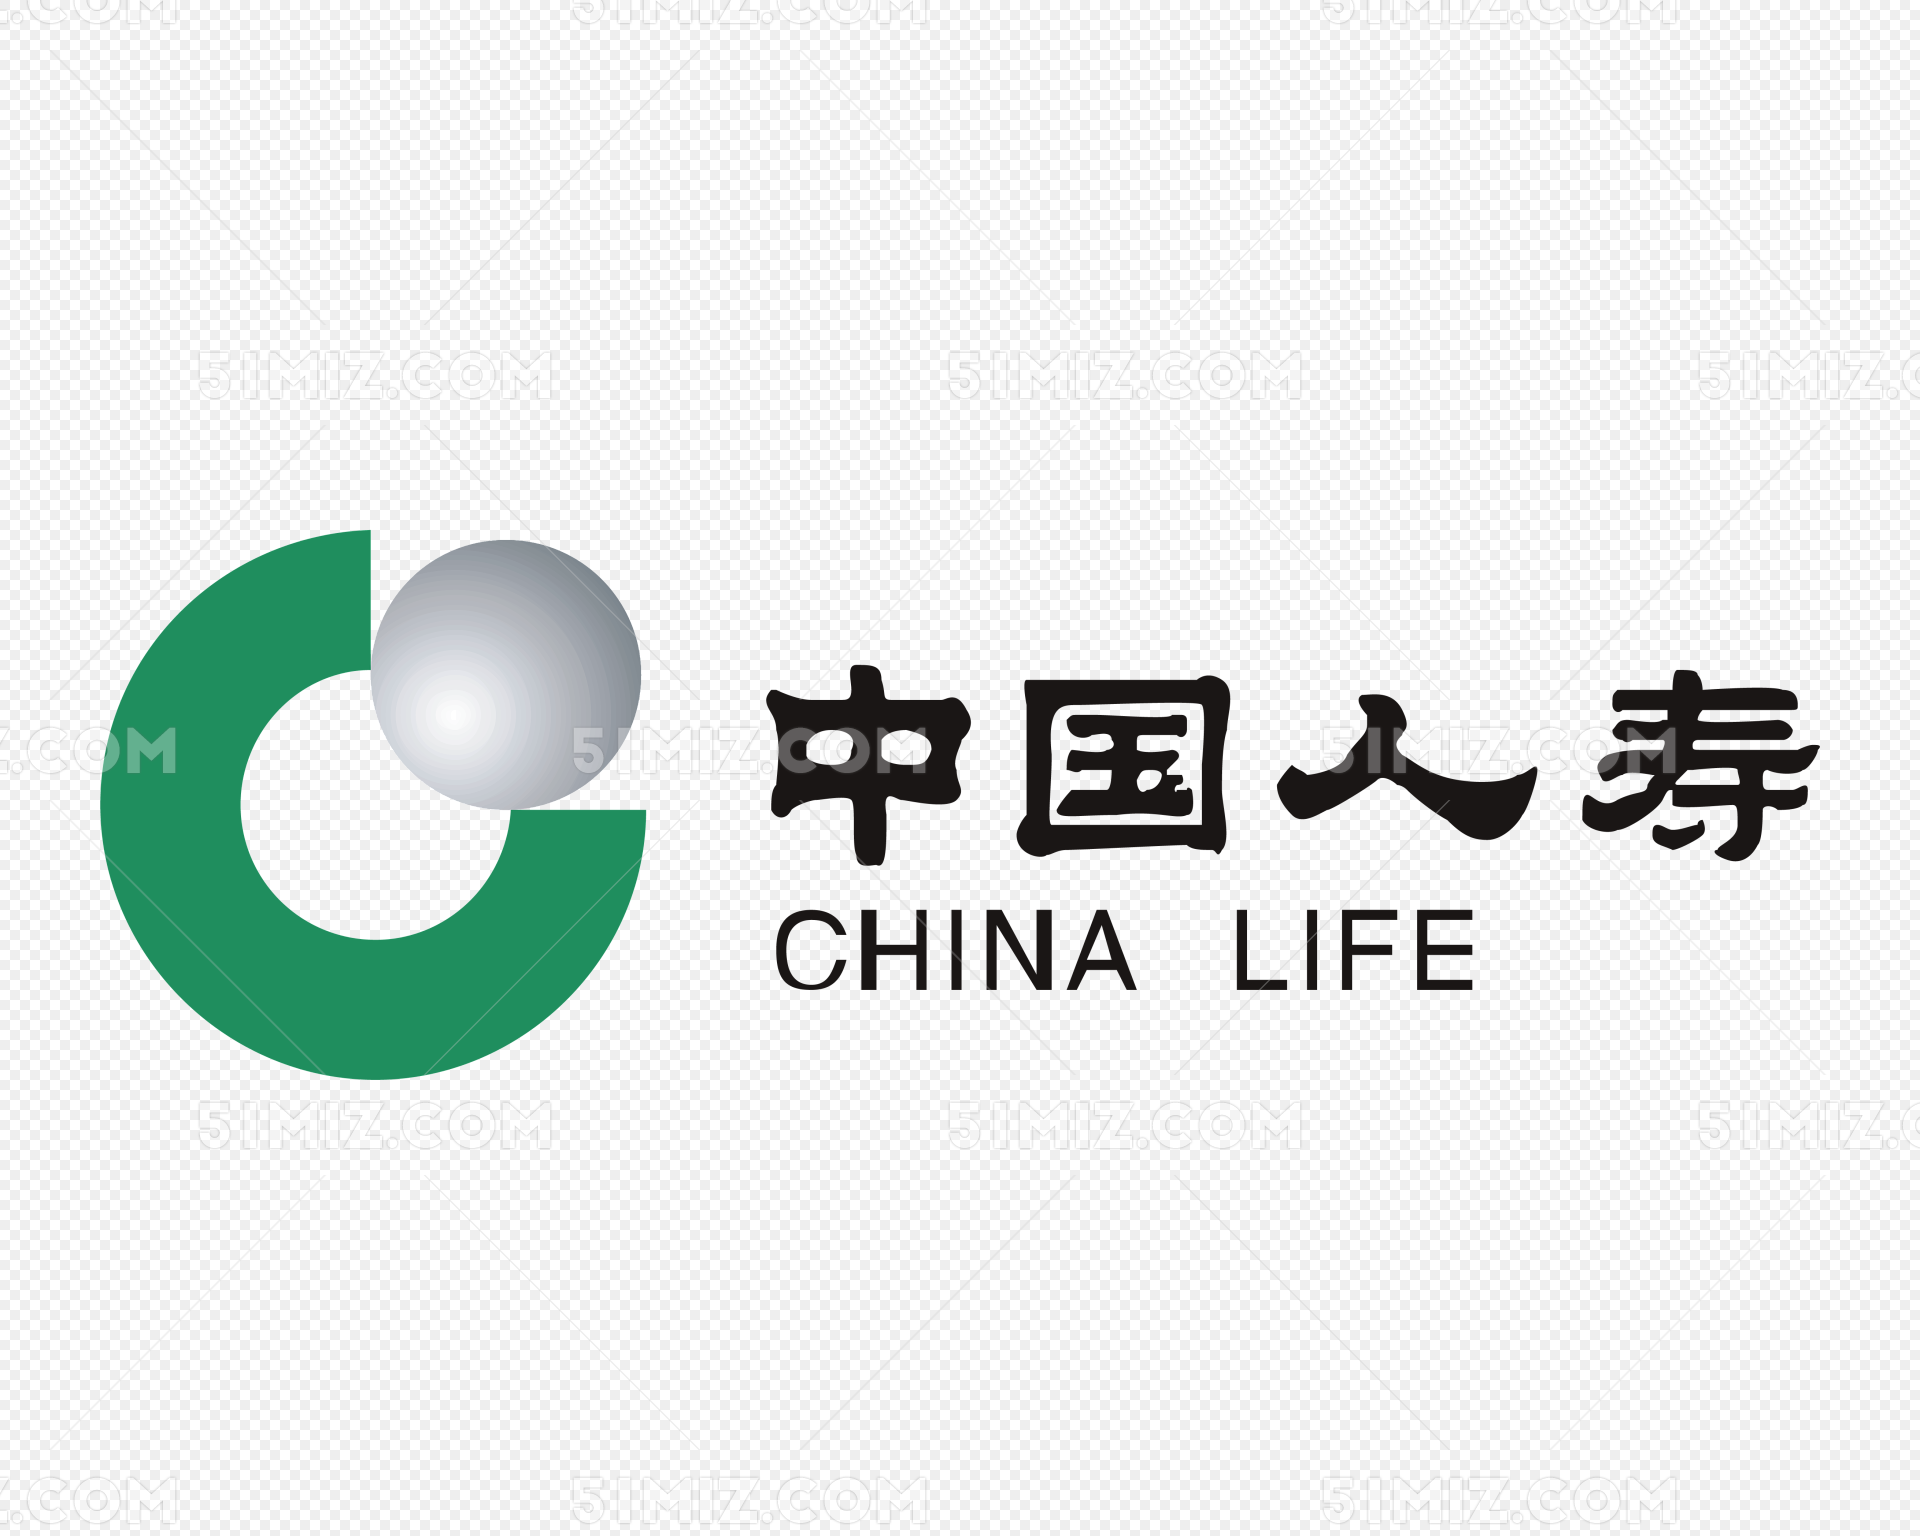 中国人寿发布爱意康悦医疗保险系列产品-保险-金融界